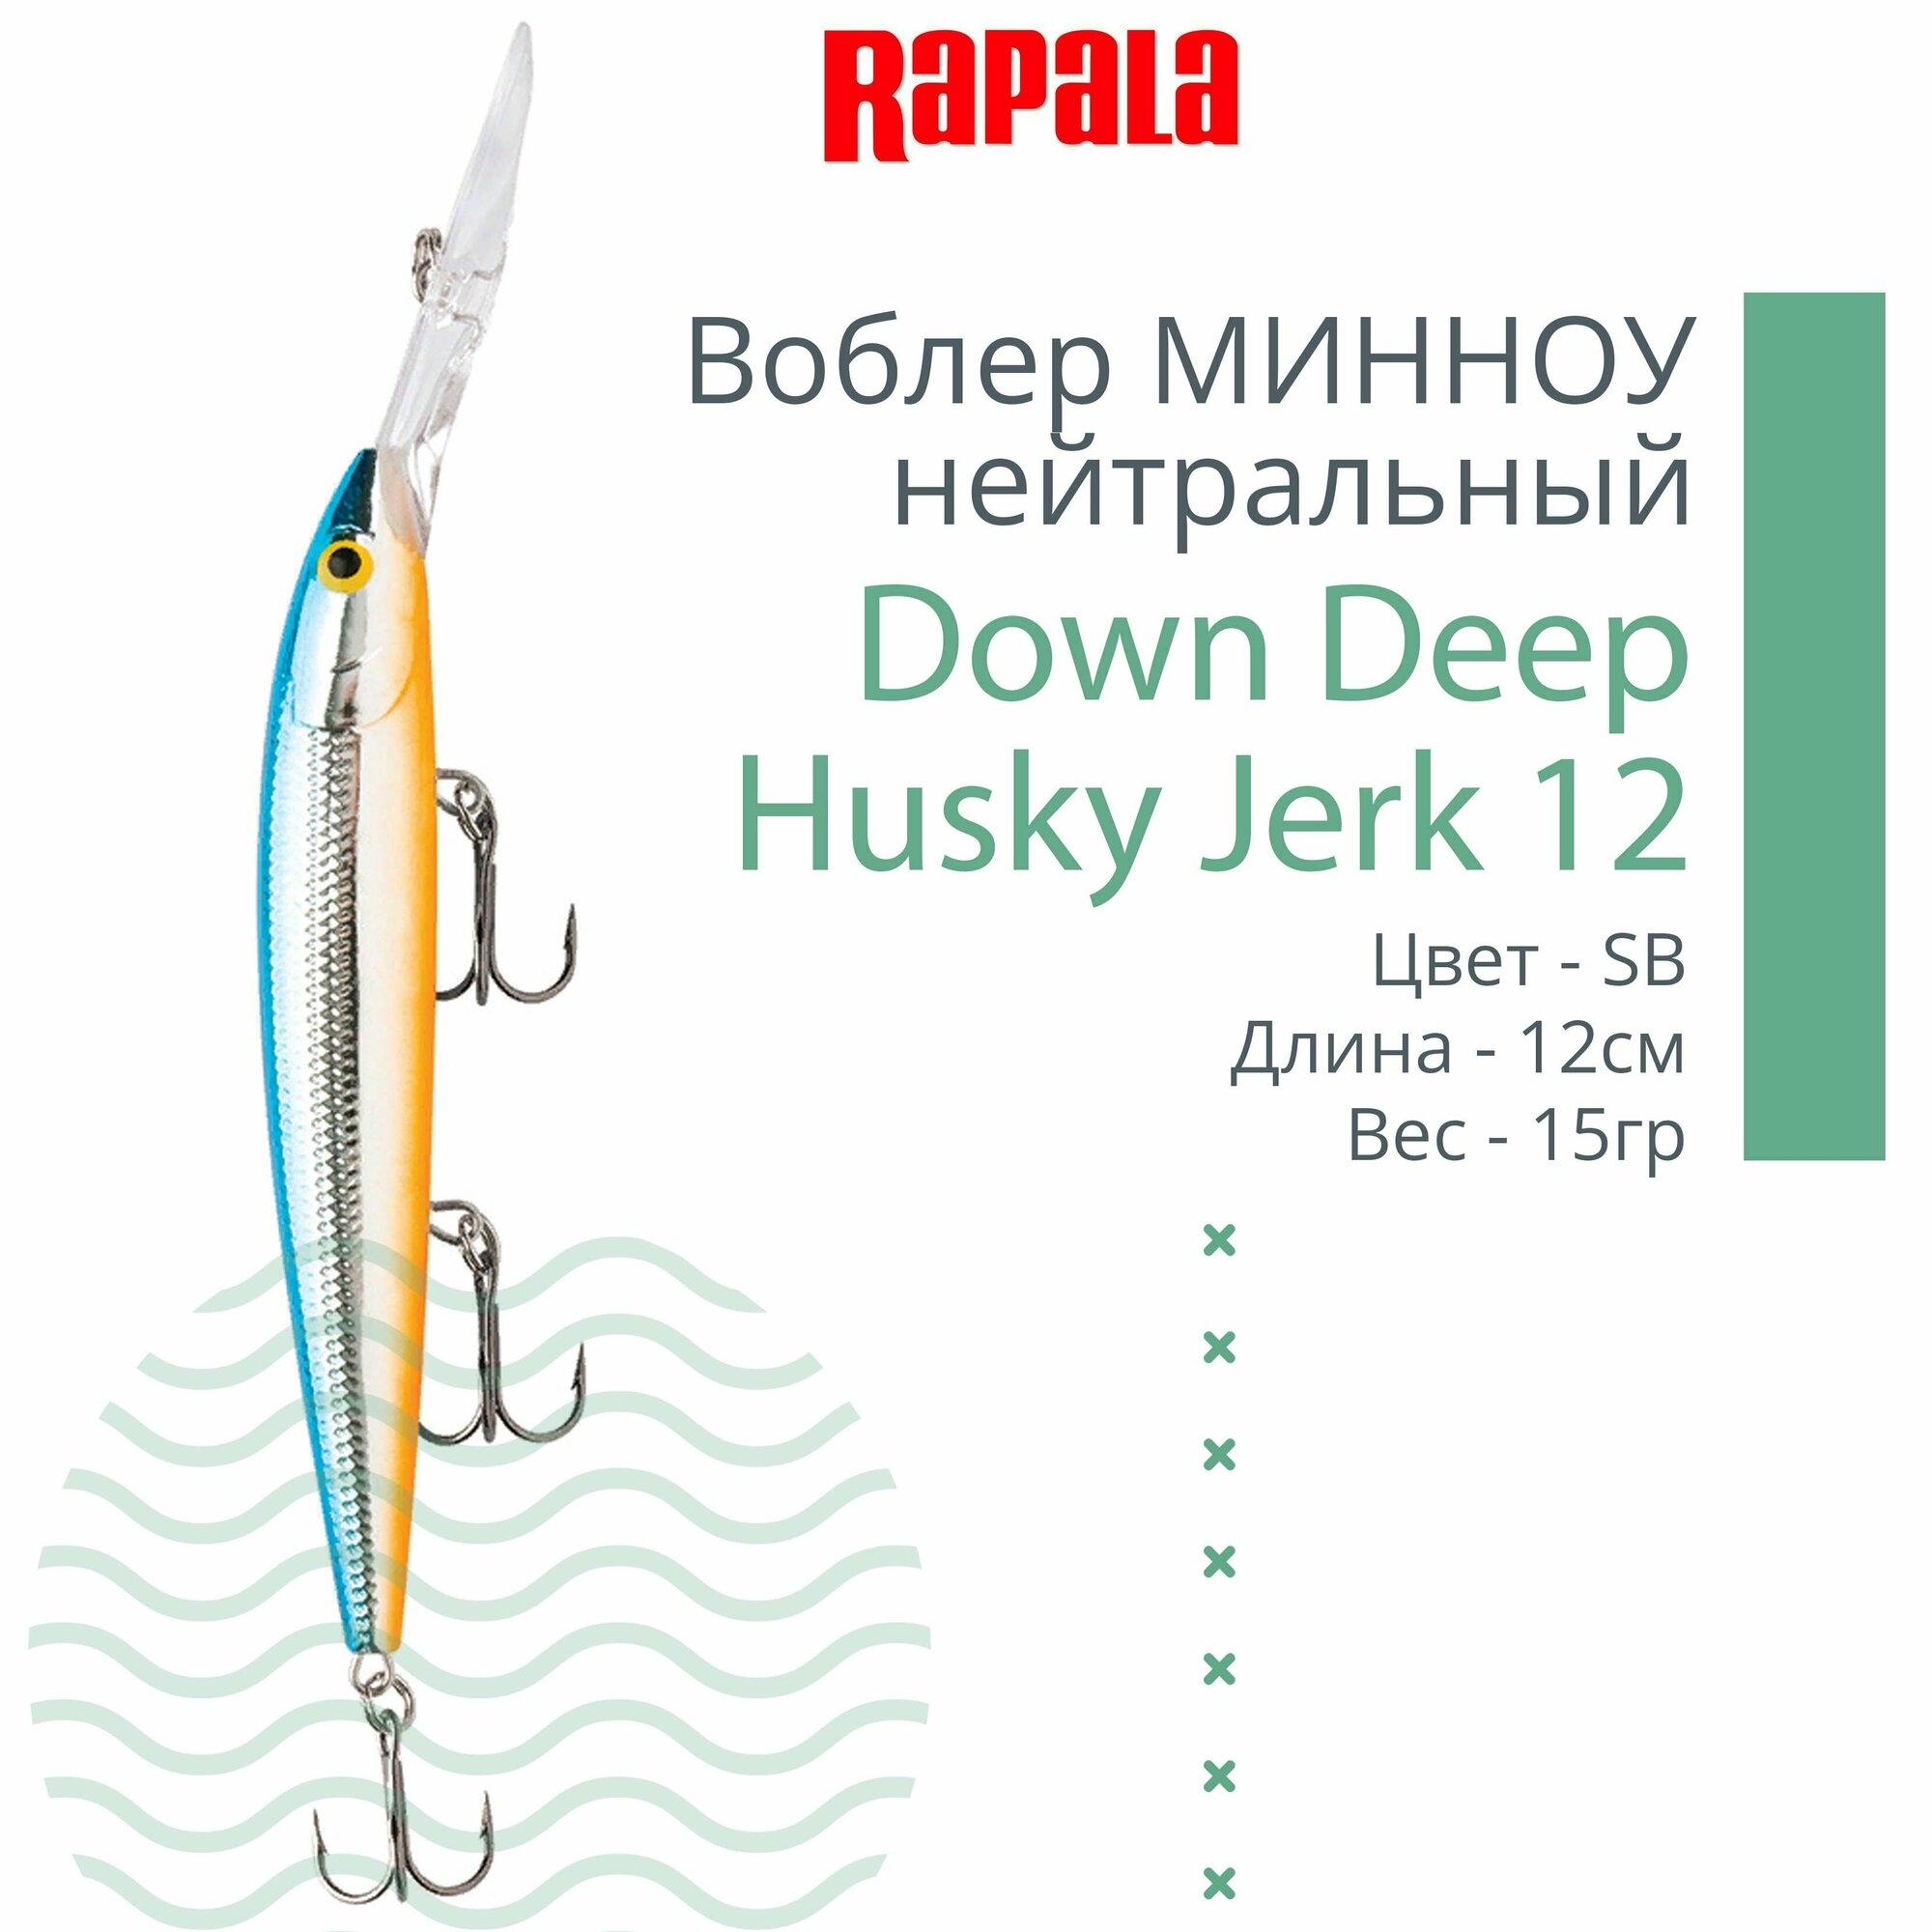 Воблер для рыбалки RAPALA Down Deep Husky Jerk 12, 12см, 15гр, цвет SB, нейтральный